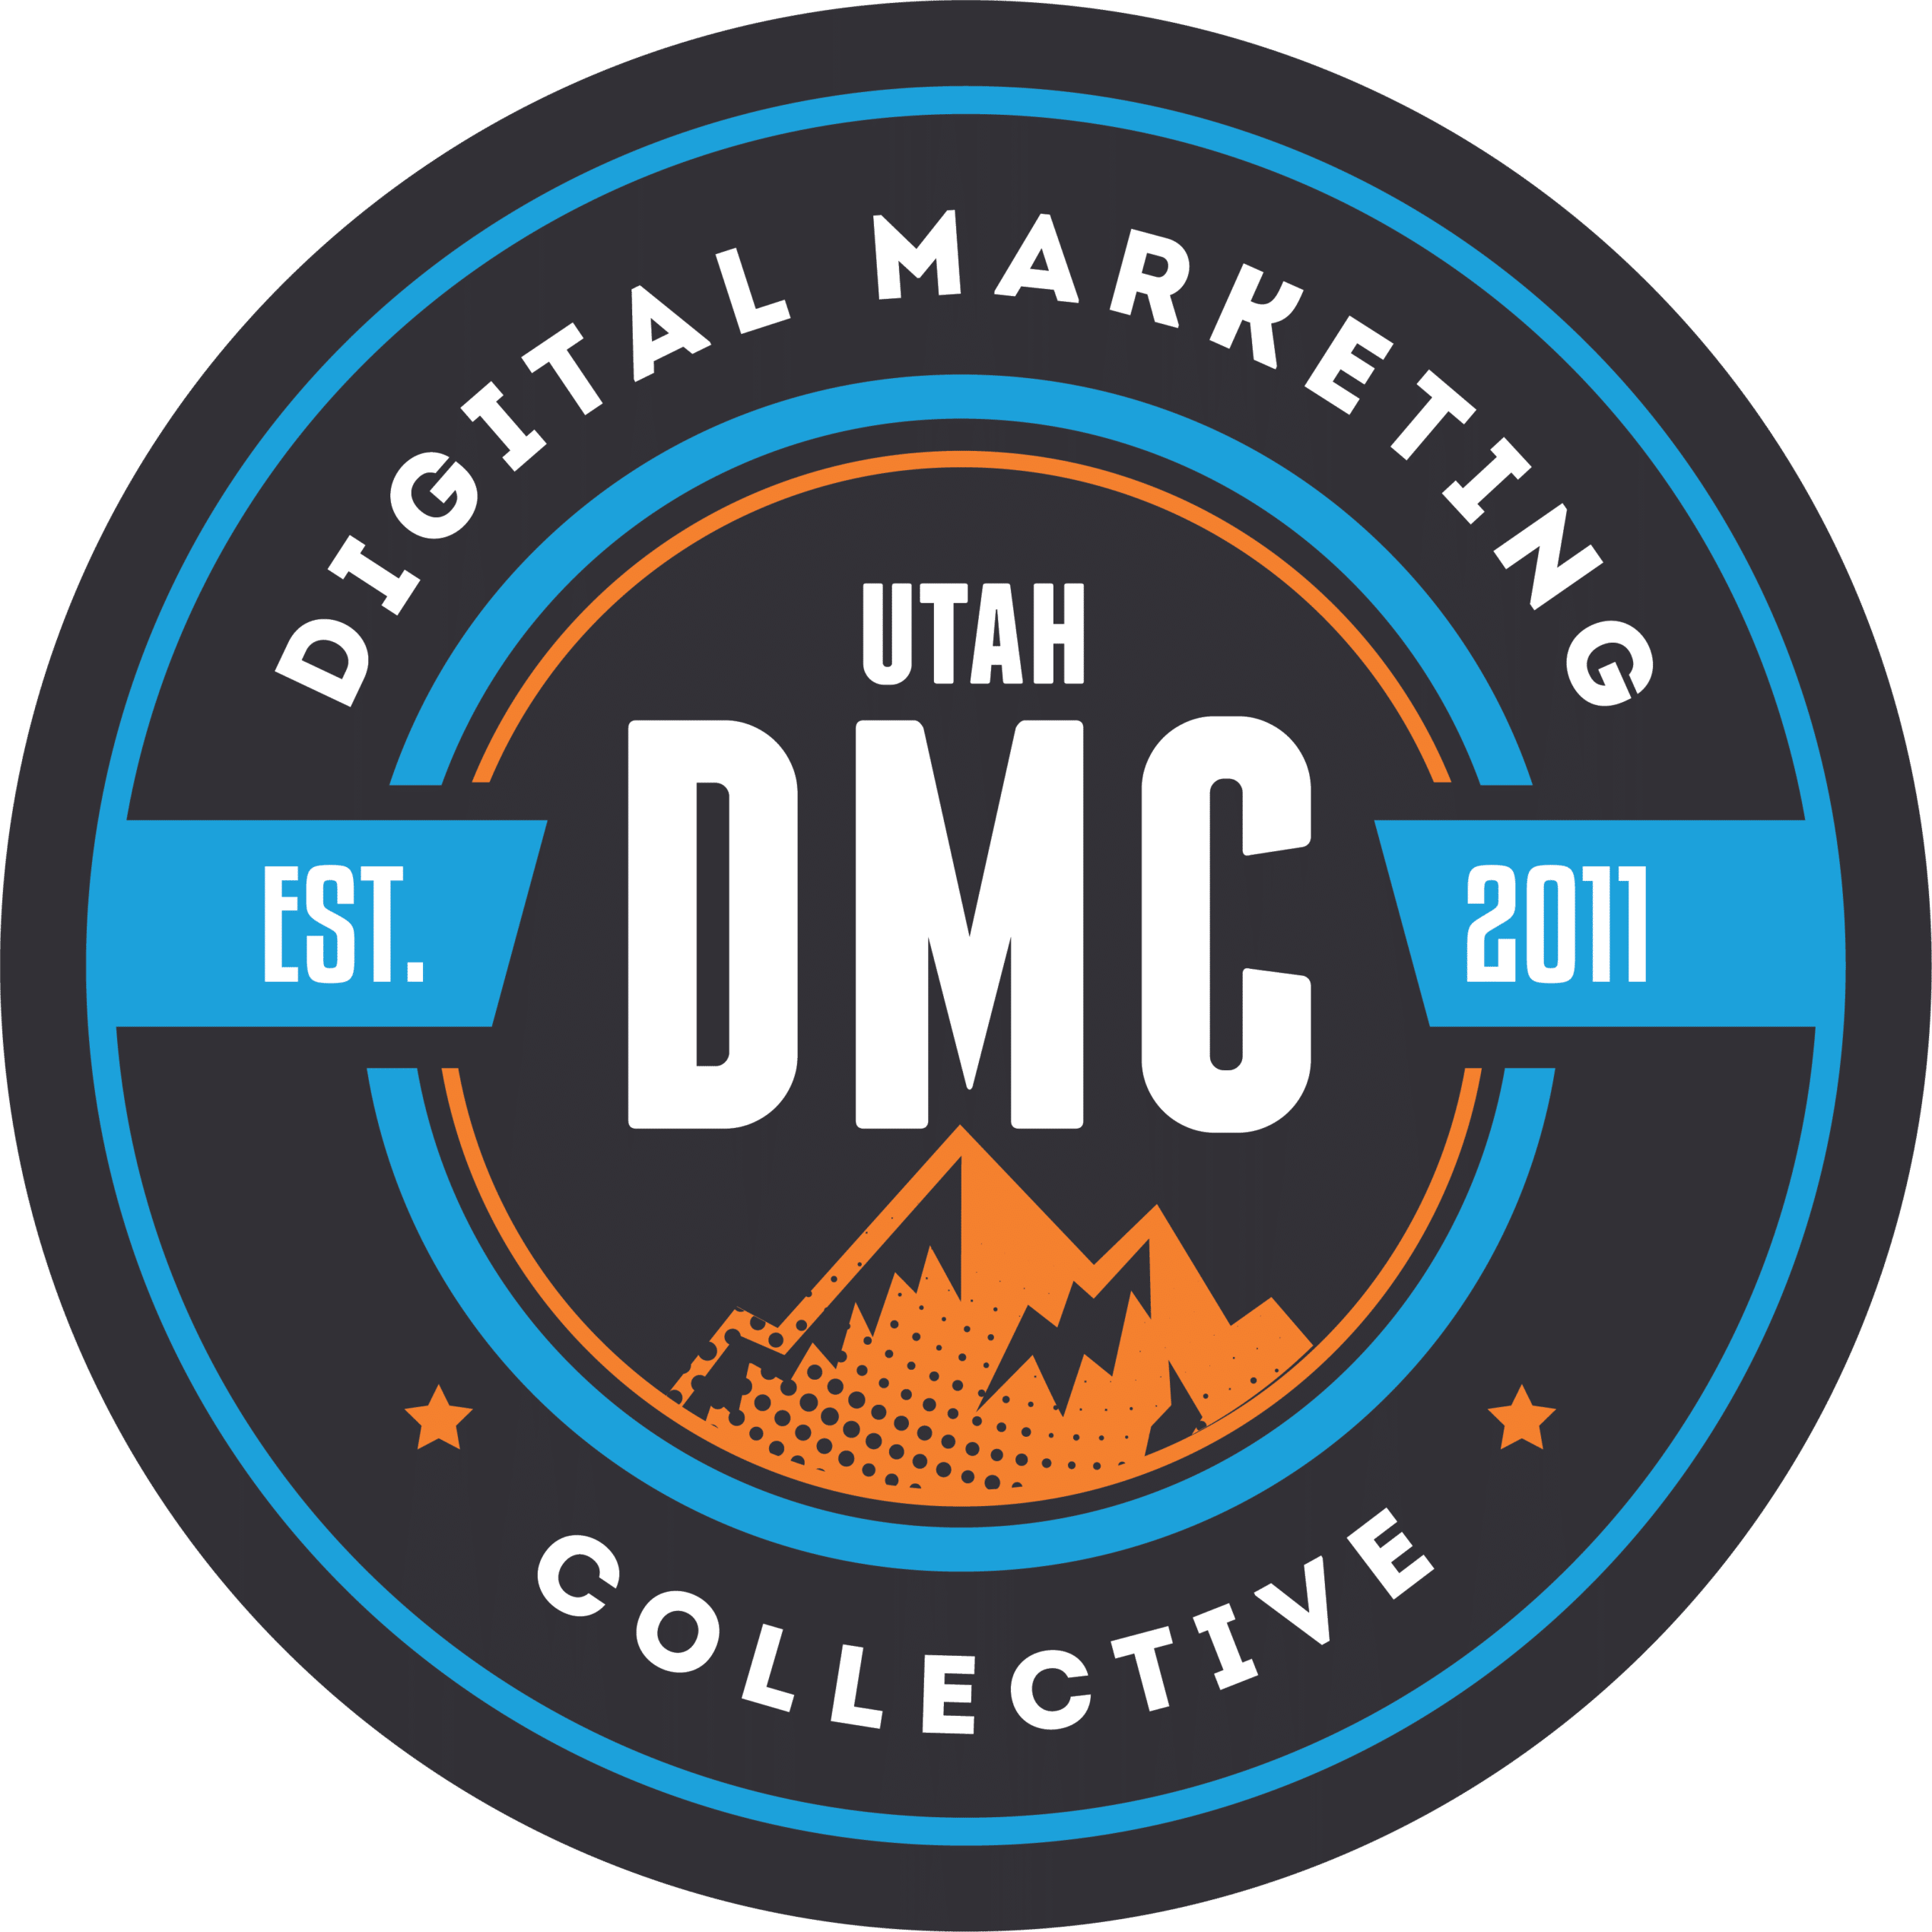 Utah DMC